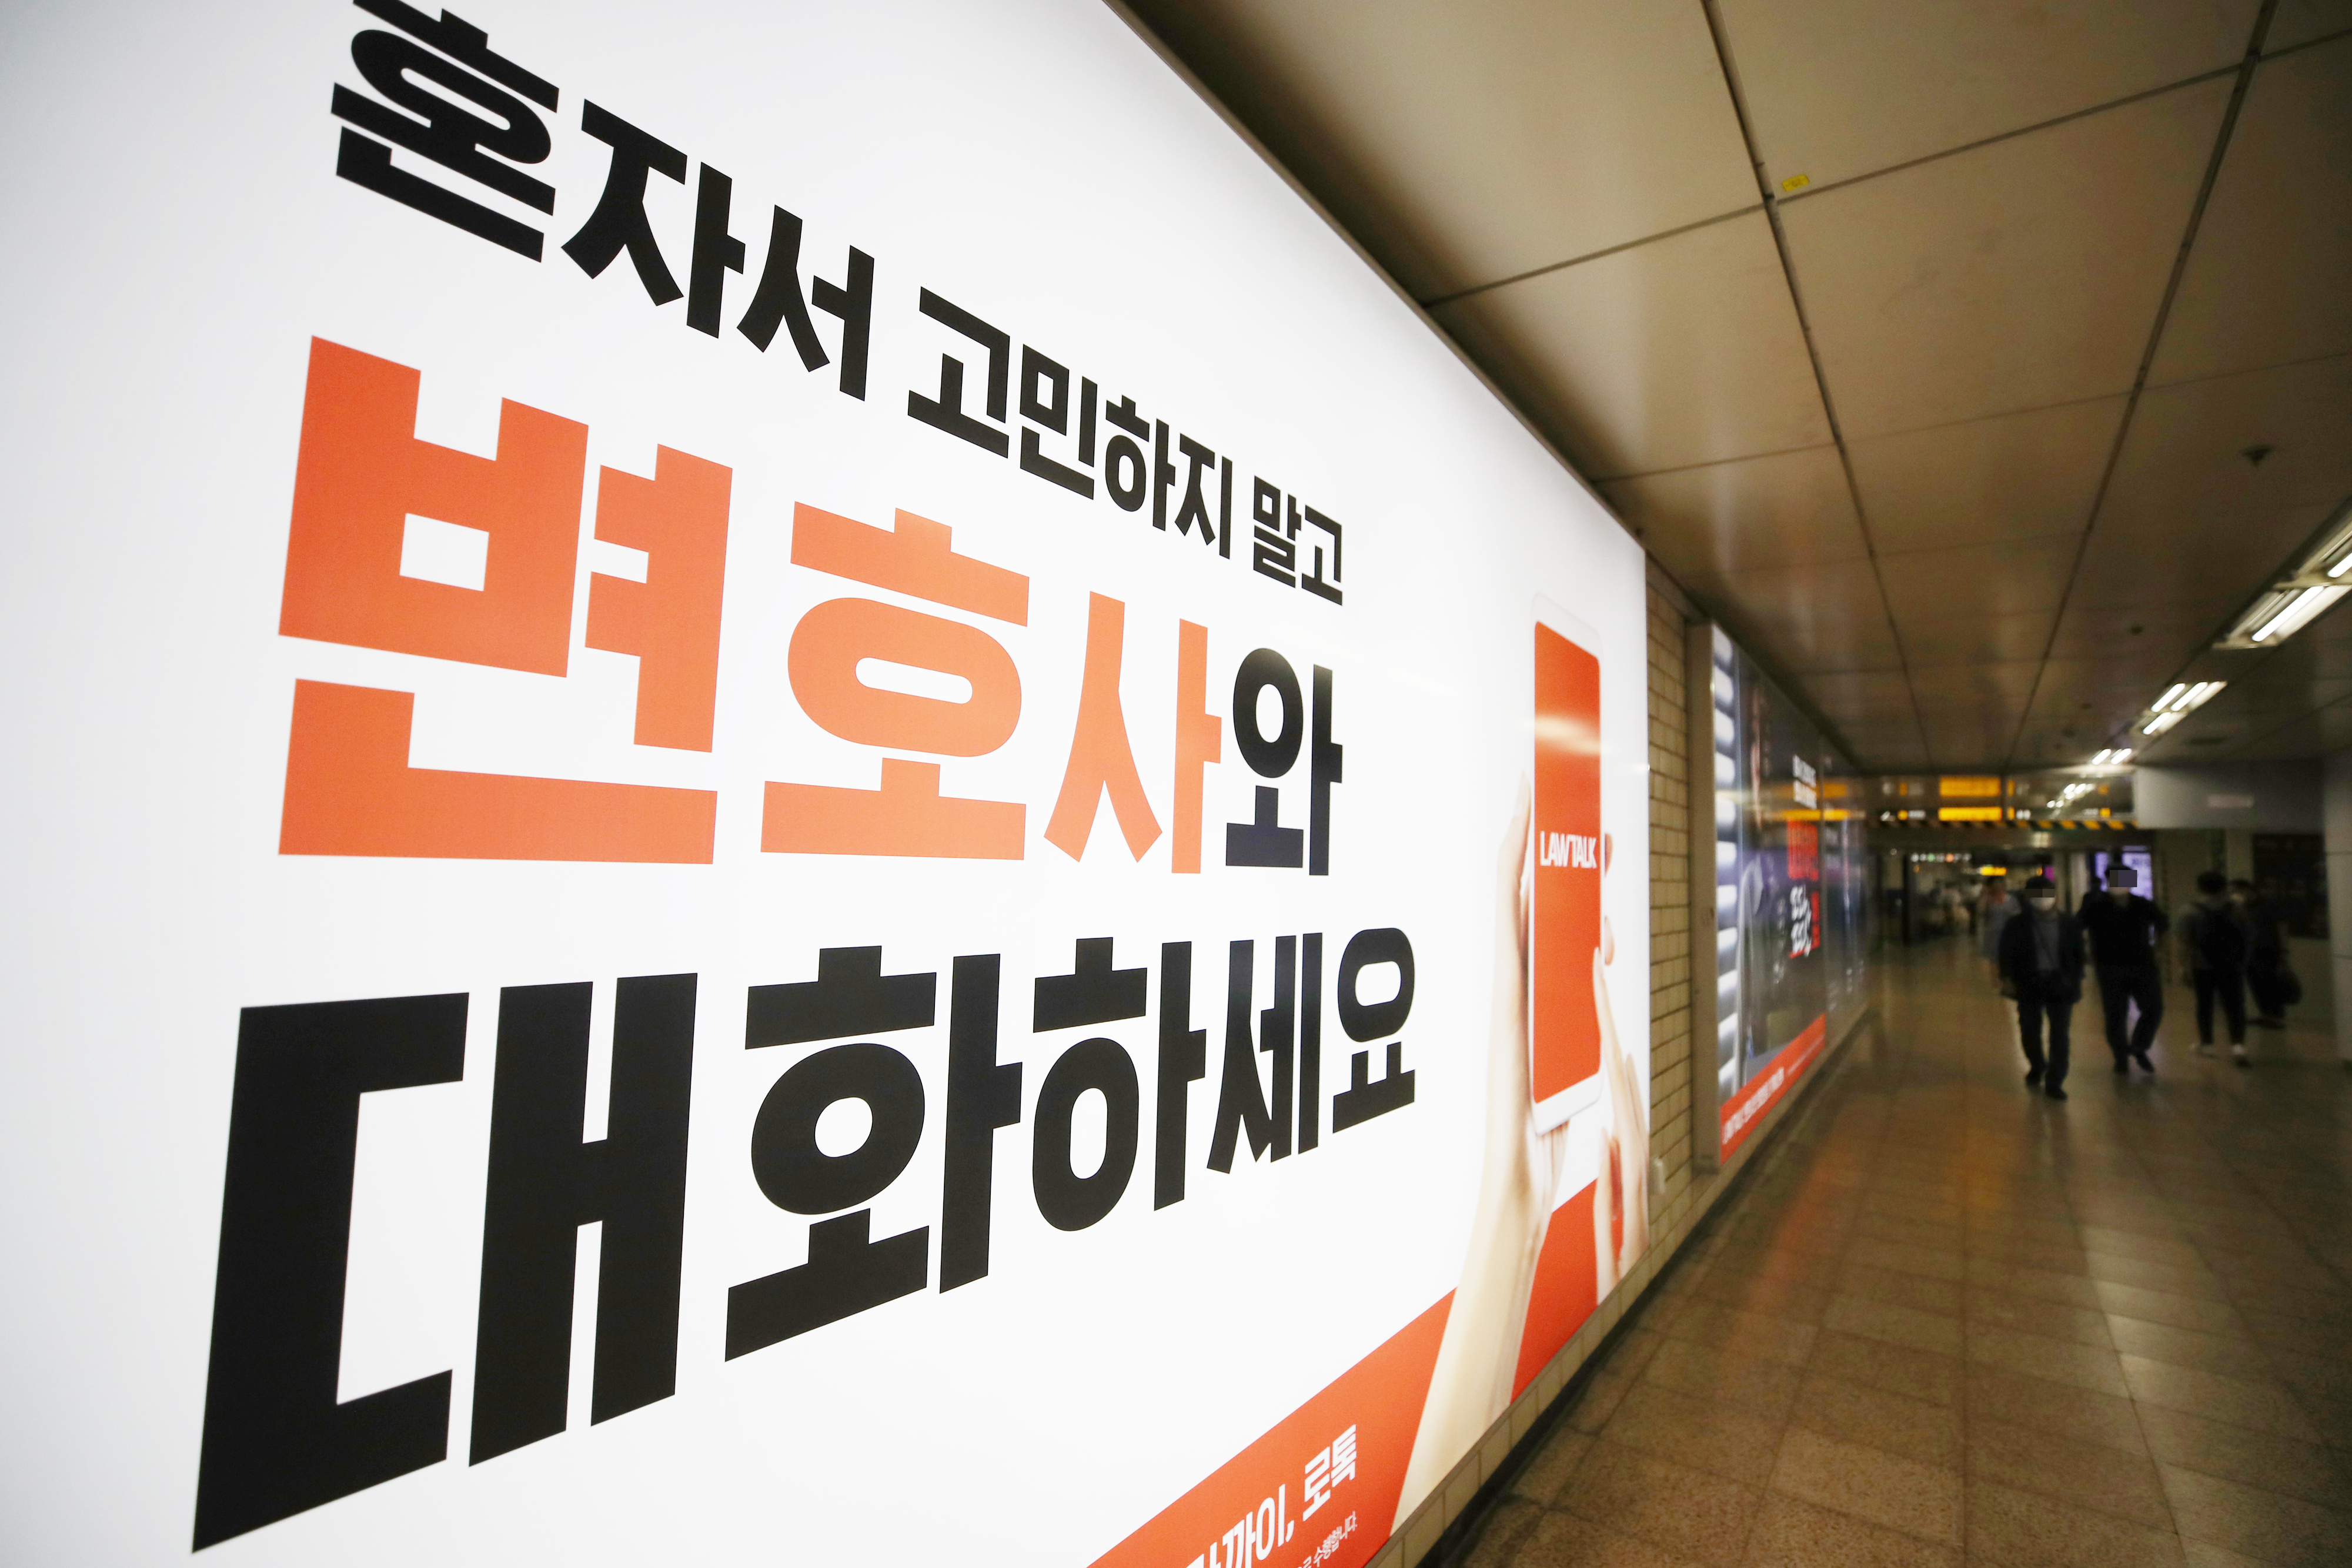 서울 지하철 교대역 역사에 정보기술(IT)을 활용한 새로운 법률서비스 플랫폼 ‘로톡’의 전면 광고가 설치돼 있다. 서울신문 DB